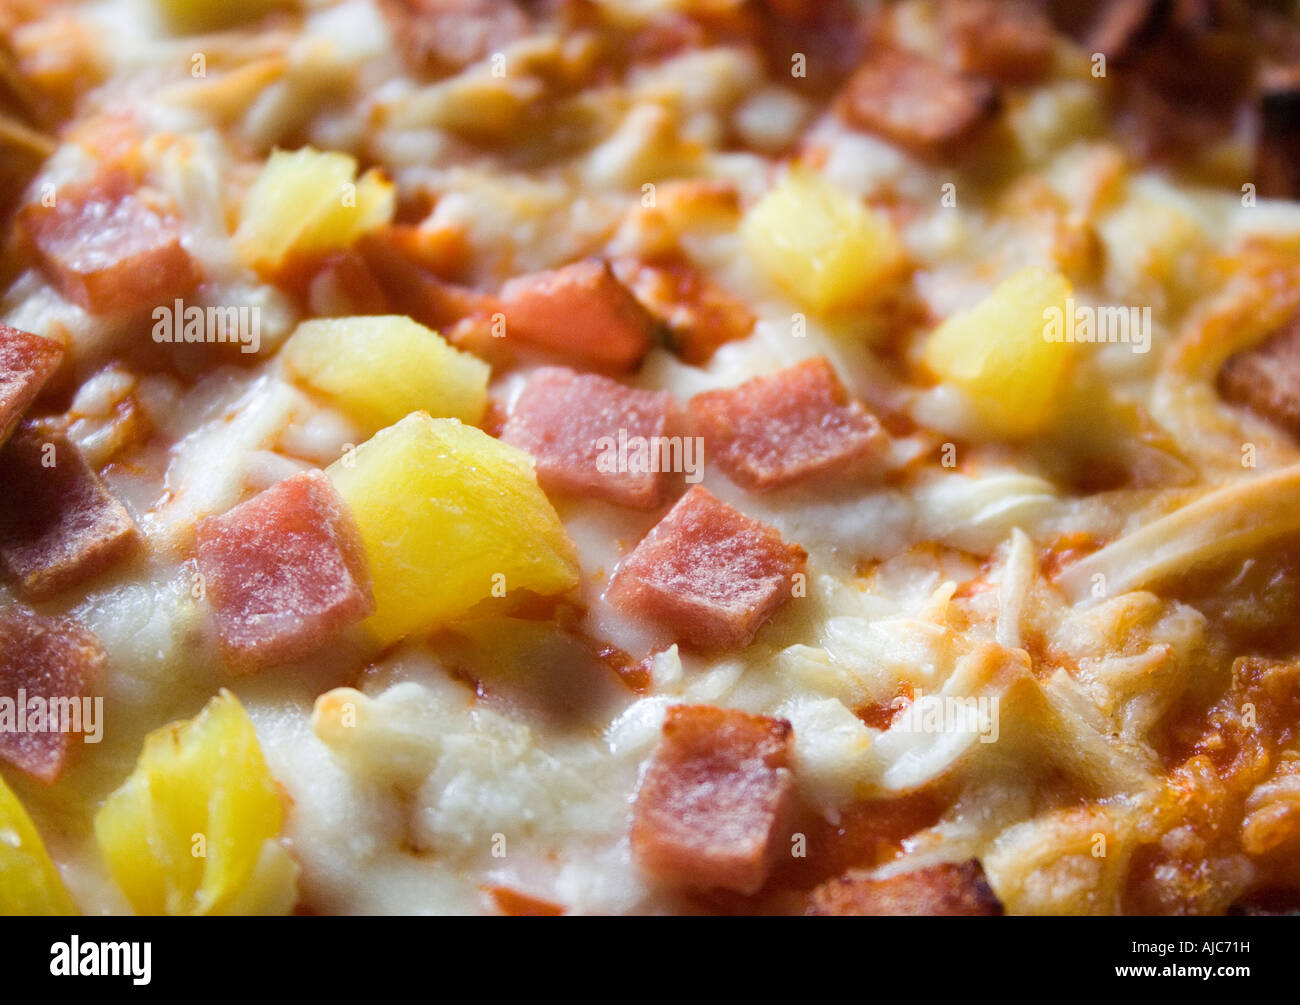 Primer plano de pizzas con queso y piña cocidos hasta que doren ordenó a menudo desde una toma de distancia Foto de stock